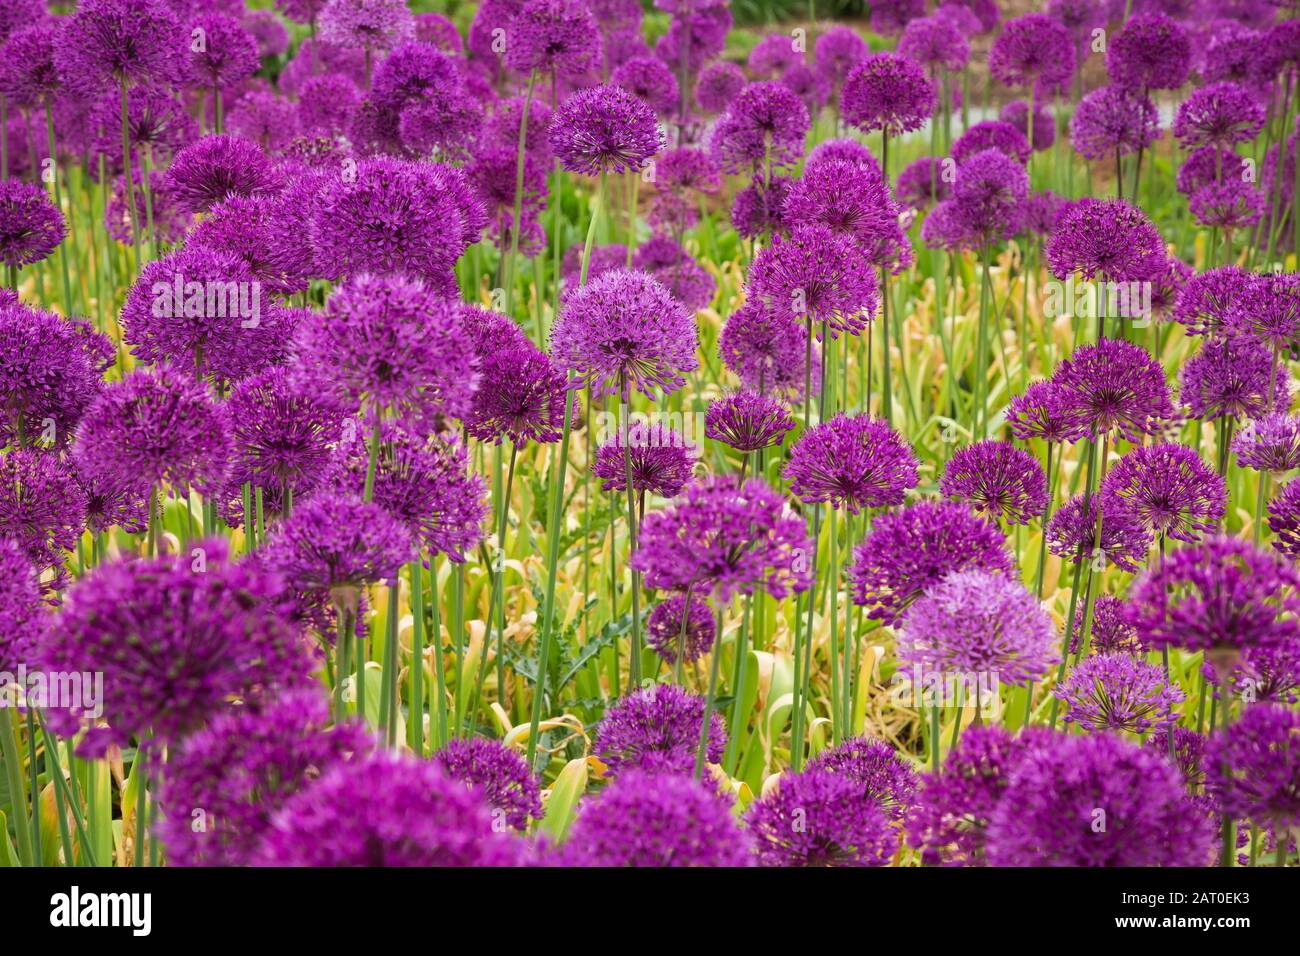 Violett blühendes Allium - Zwiebelpflanzen im Frühling im Rand. Stockfoto